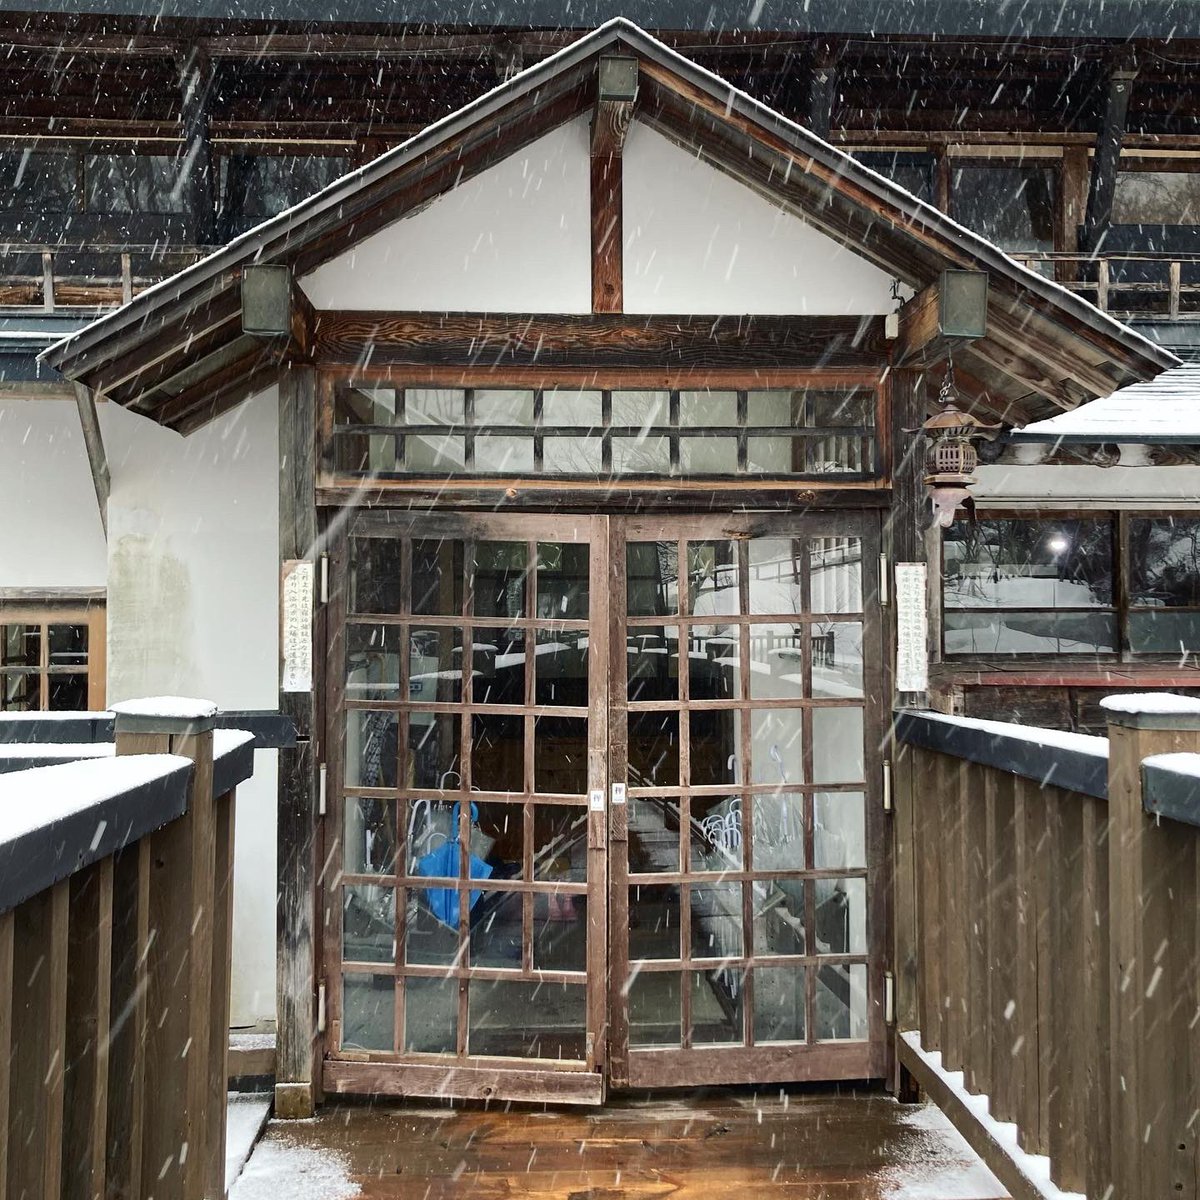 「痺れるほどカッコイイ日本の建物と風景*今回の旅行はレトロ満載でした#宝川温泉 #」|Harukaze+syuiti。のイラスト